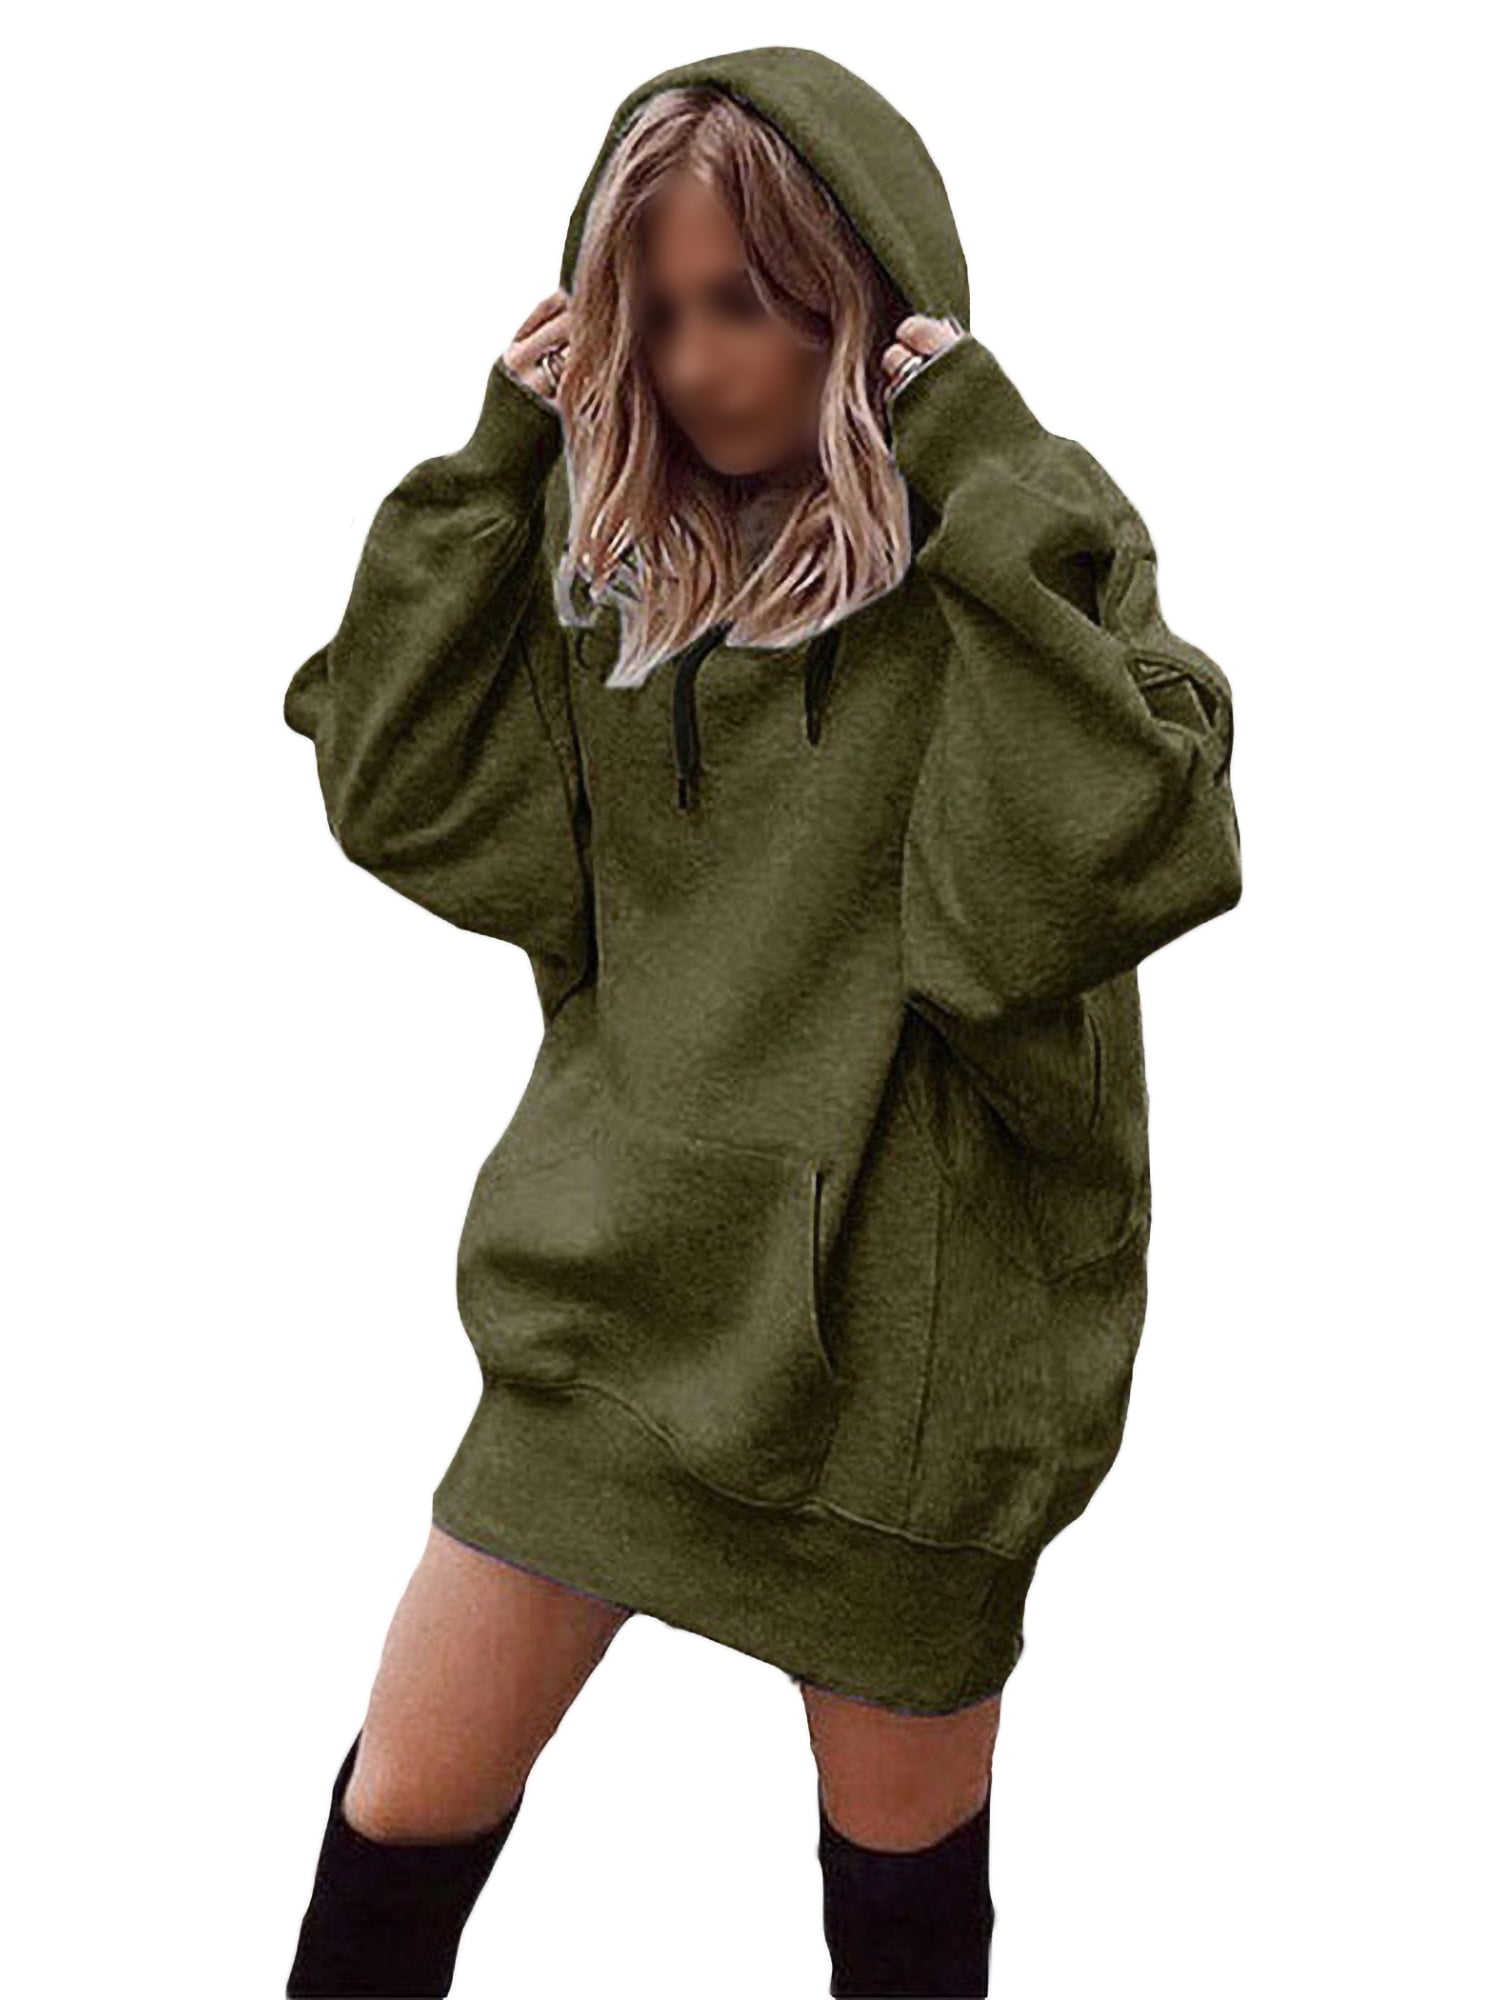 Xinantime Women Solid Hooded Sweatshirt Long Sleeve Hoodie Sweatshirt Hooded Pullover Tops Blouse with Pocket